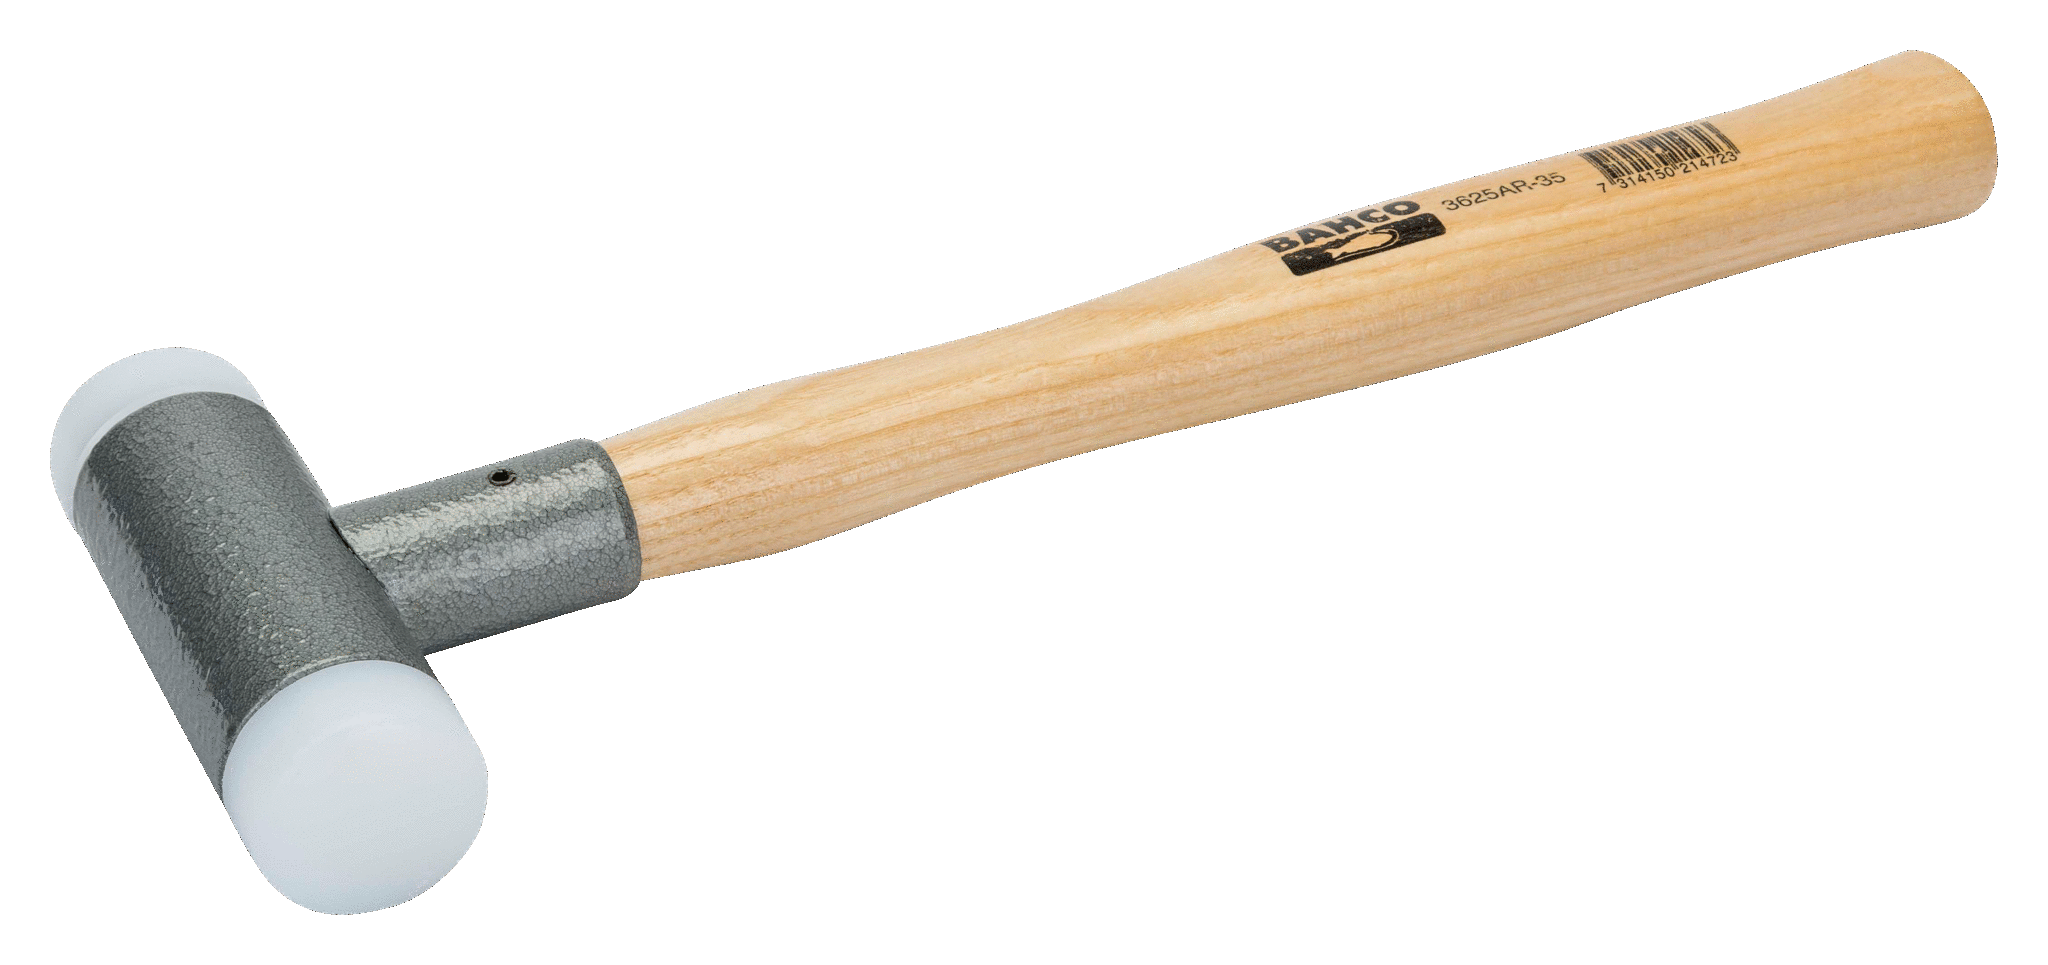 картинка Молоток безотбойный с нейлоновыми бойками, деревянная рукоятка BAHCO 3625AR от магазина "Элит-инструмент"